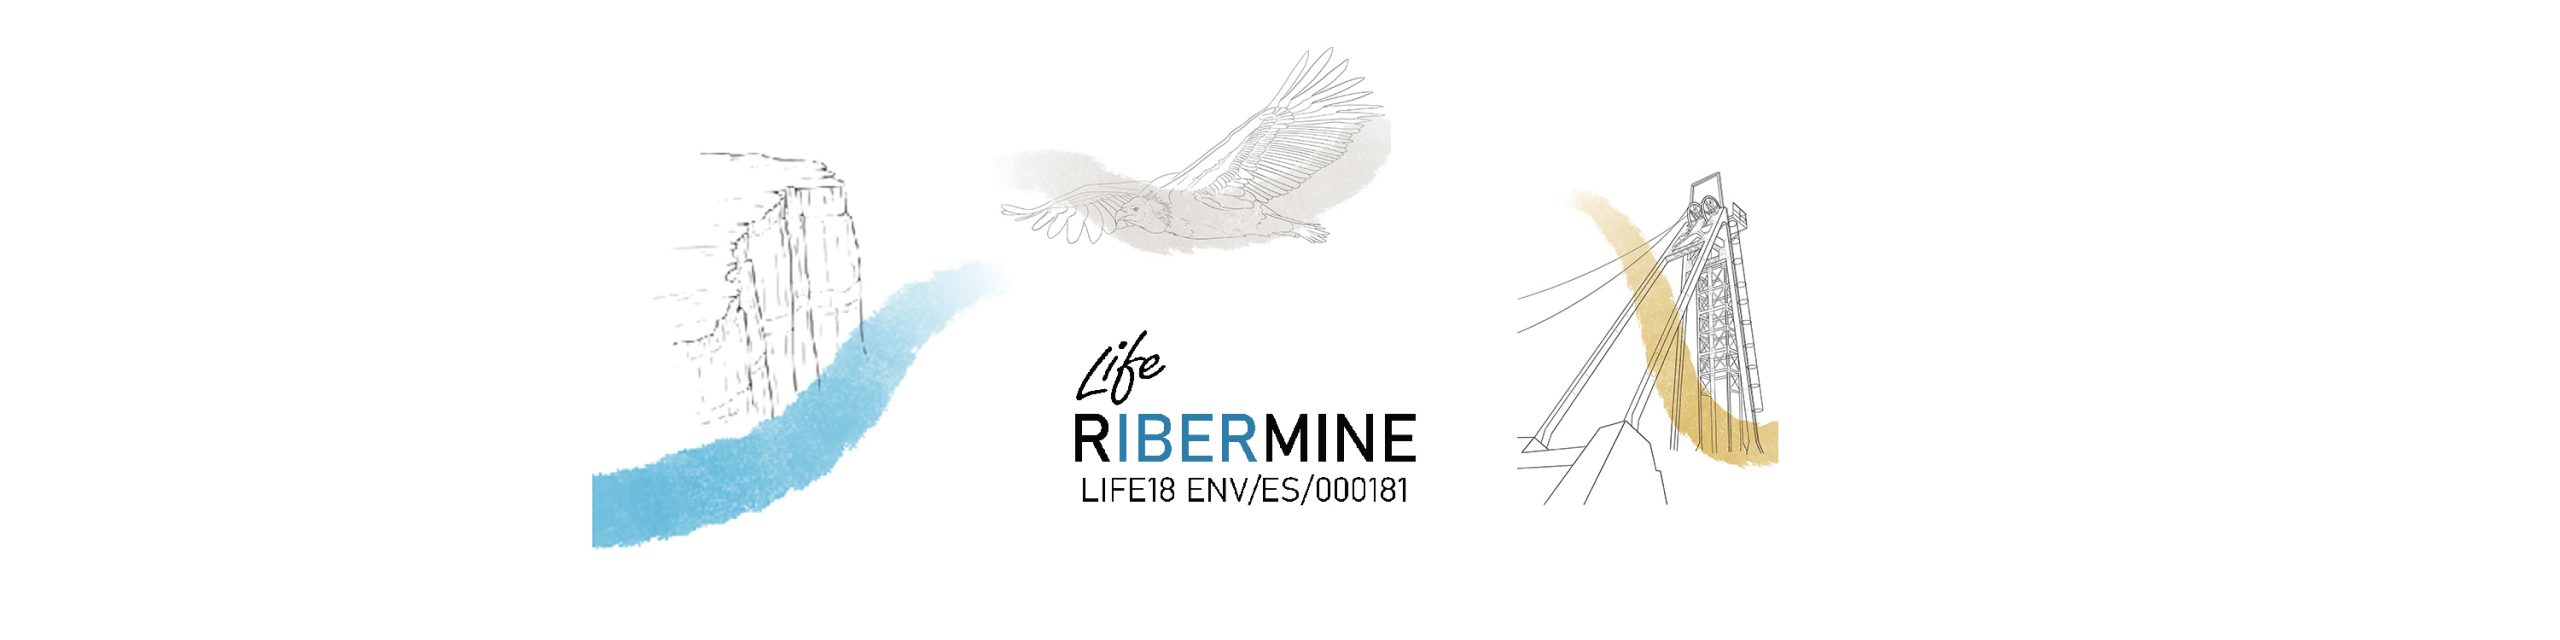 LIFE RIBERMINE is a featured new in the Máster de Restauración de Ecosistemas – MURE, at Universidade de Alcalá